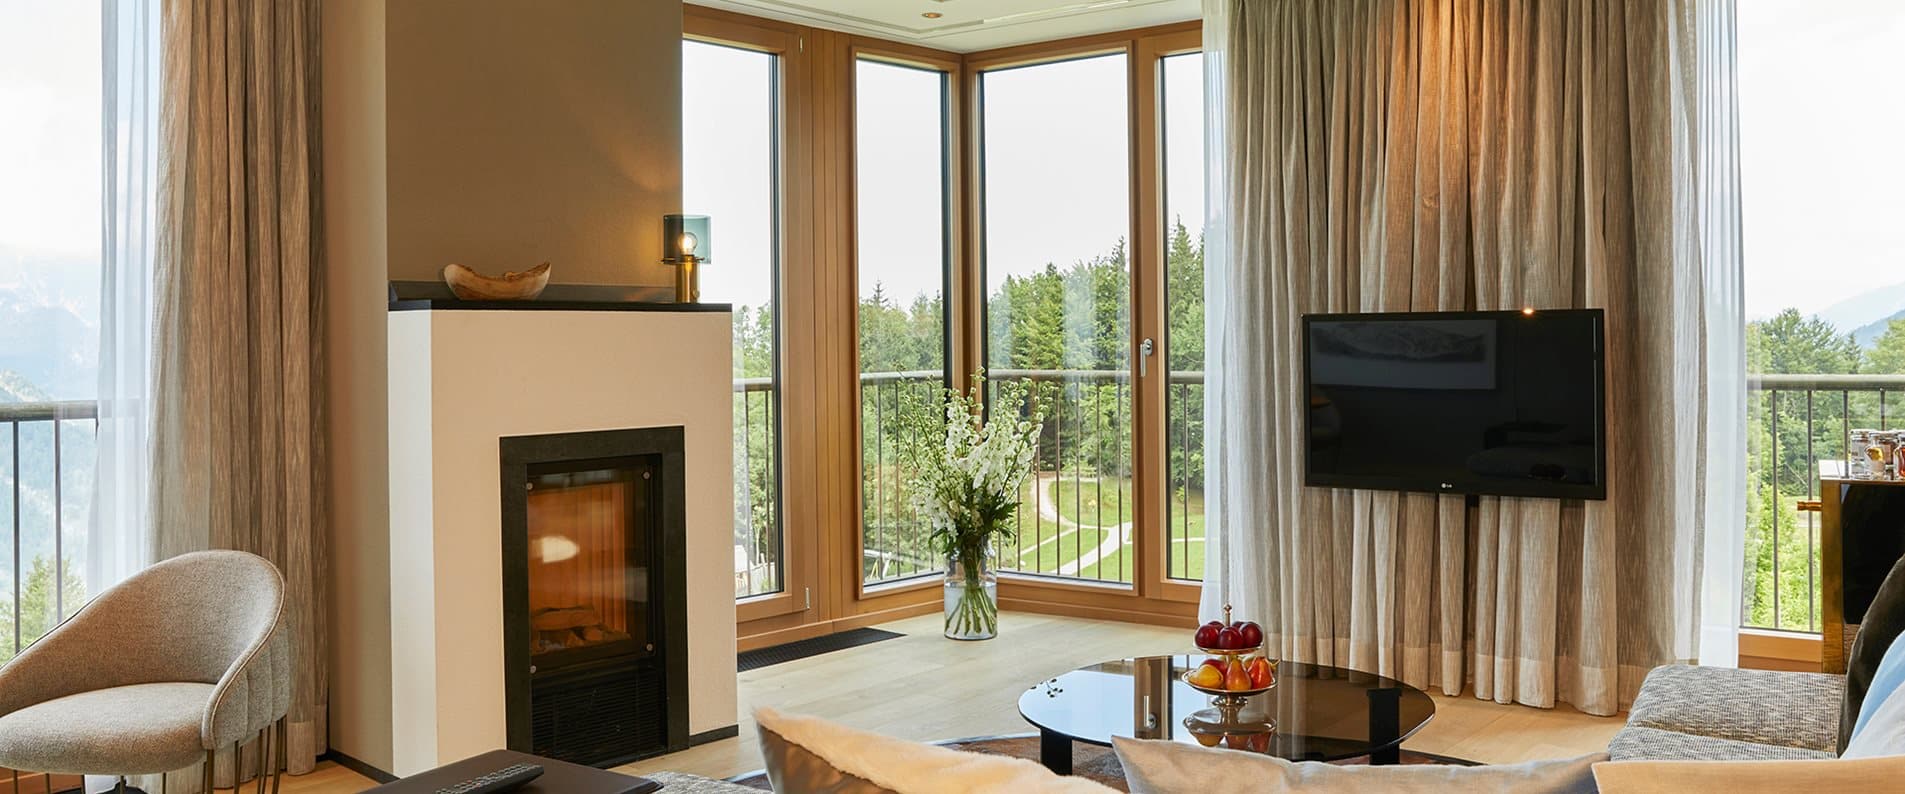 Єдиний 5-зірковий готель підвищеної комфортності у регіоні Берхтесгаден.